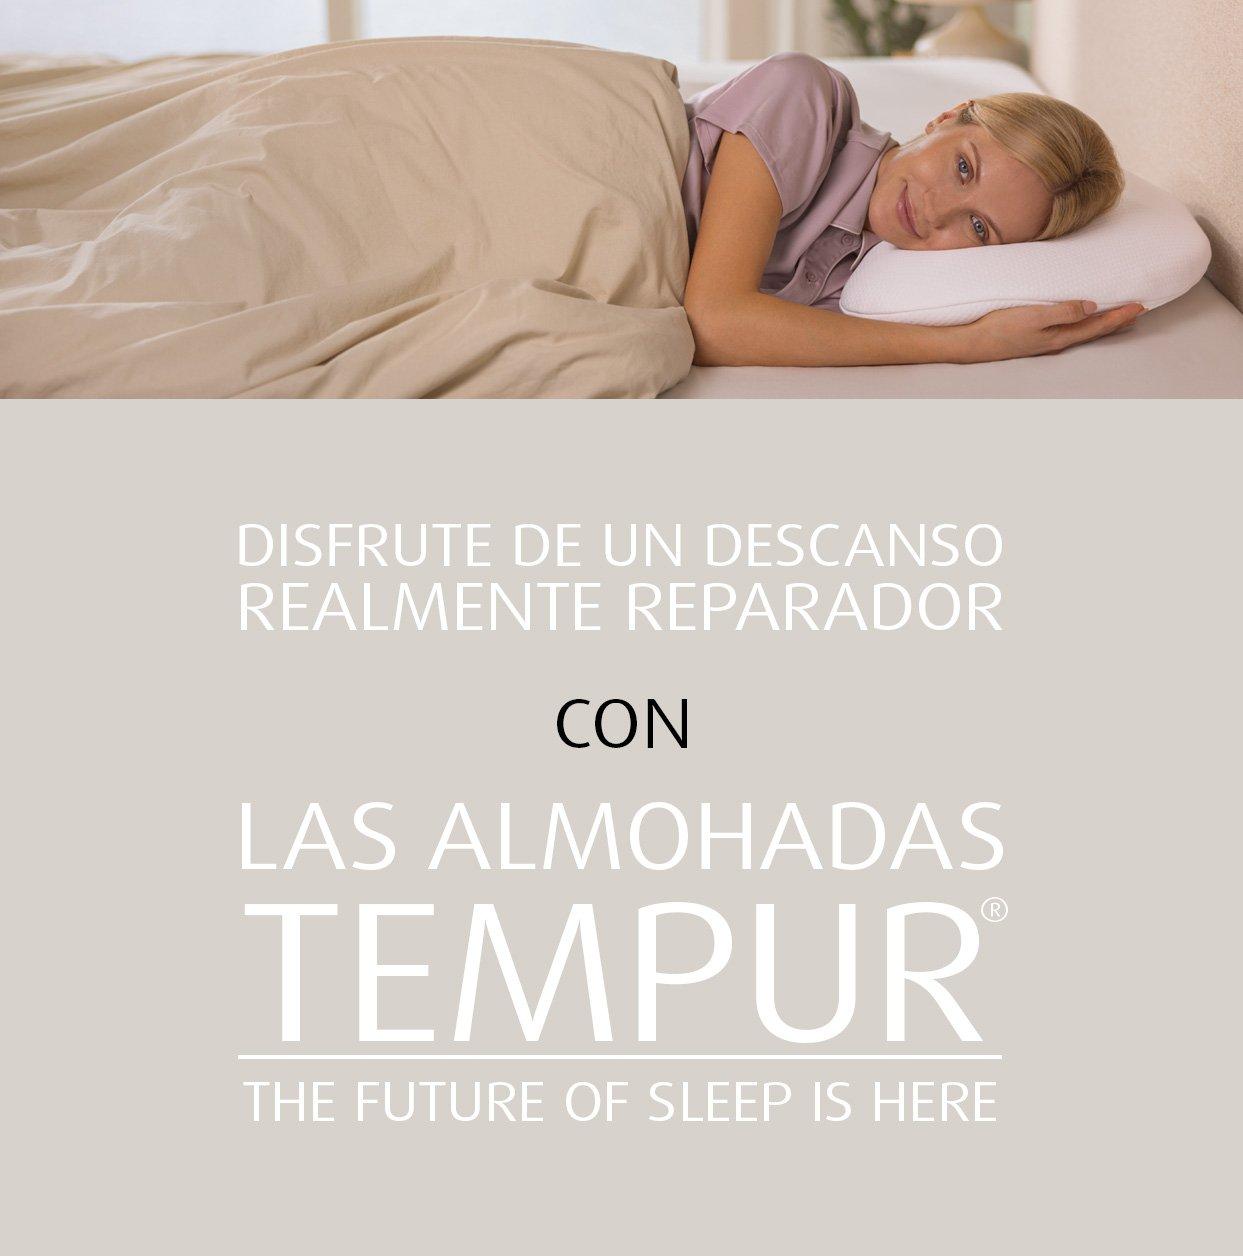 ALMOHADA CERVICAL BAJA / LOW 37X25X6/4.5 : Tiendas Tempur México:  Colchones, almohadas y accesorios para que tengas el mejor descanso